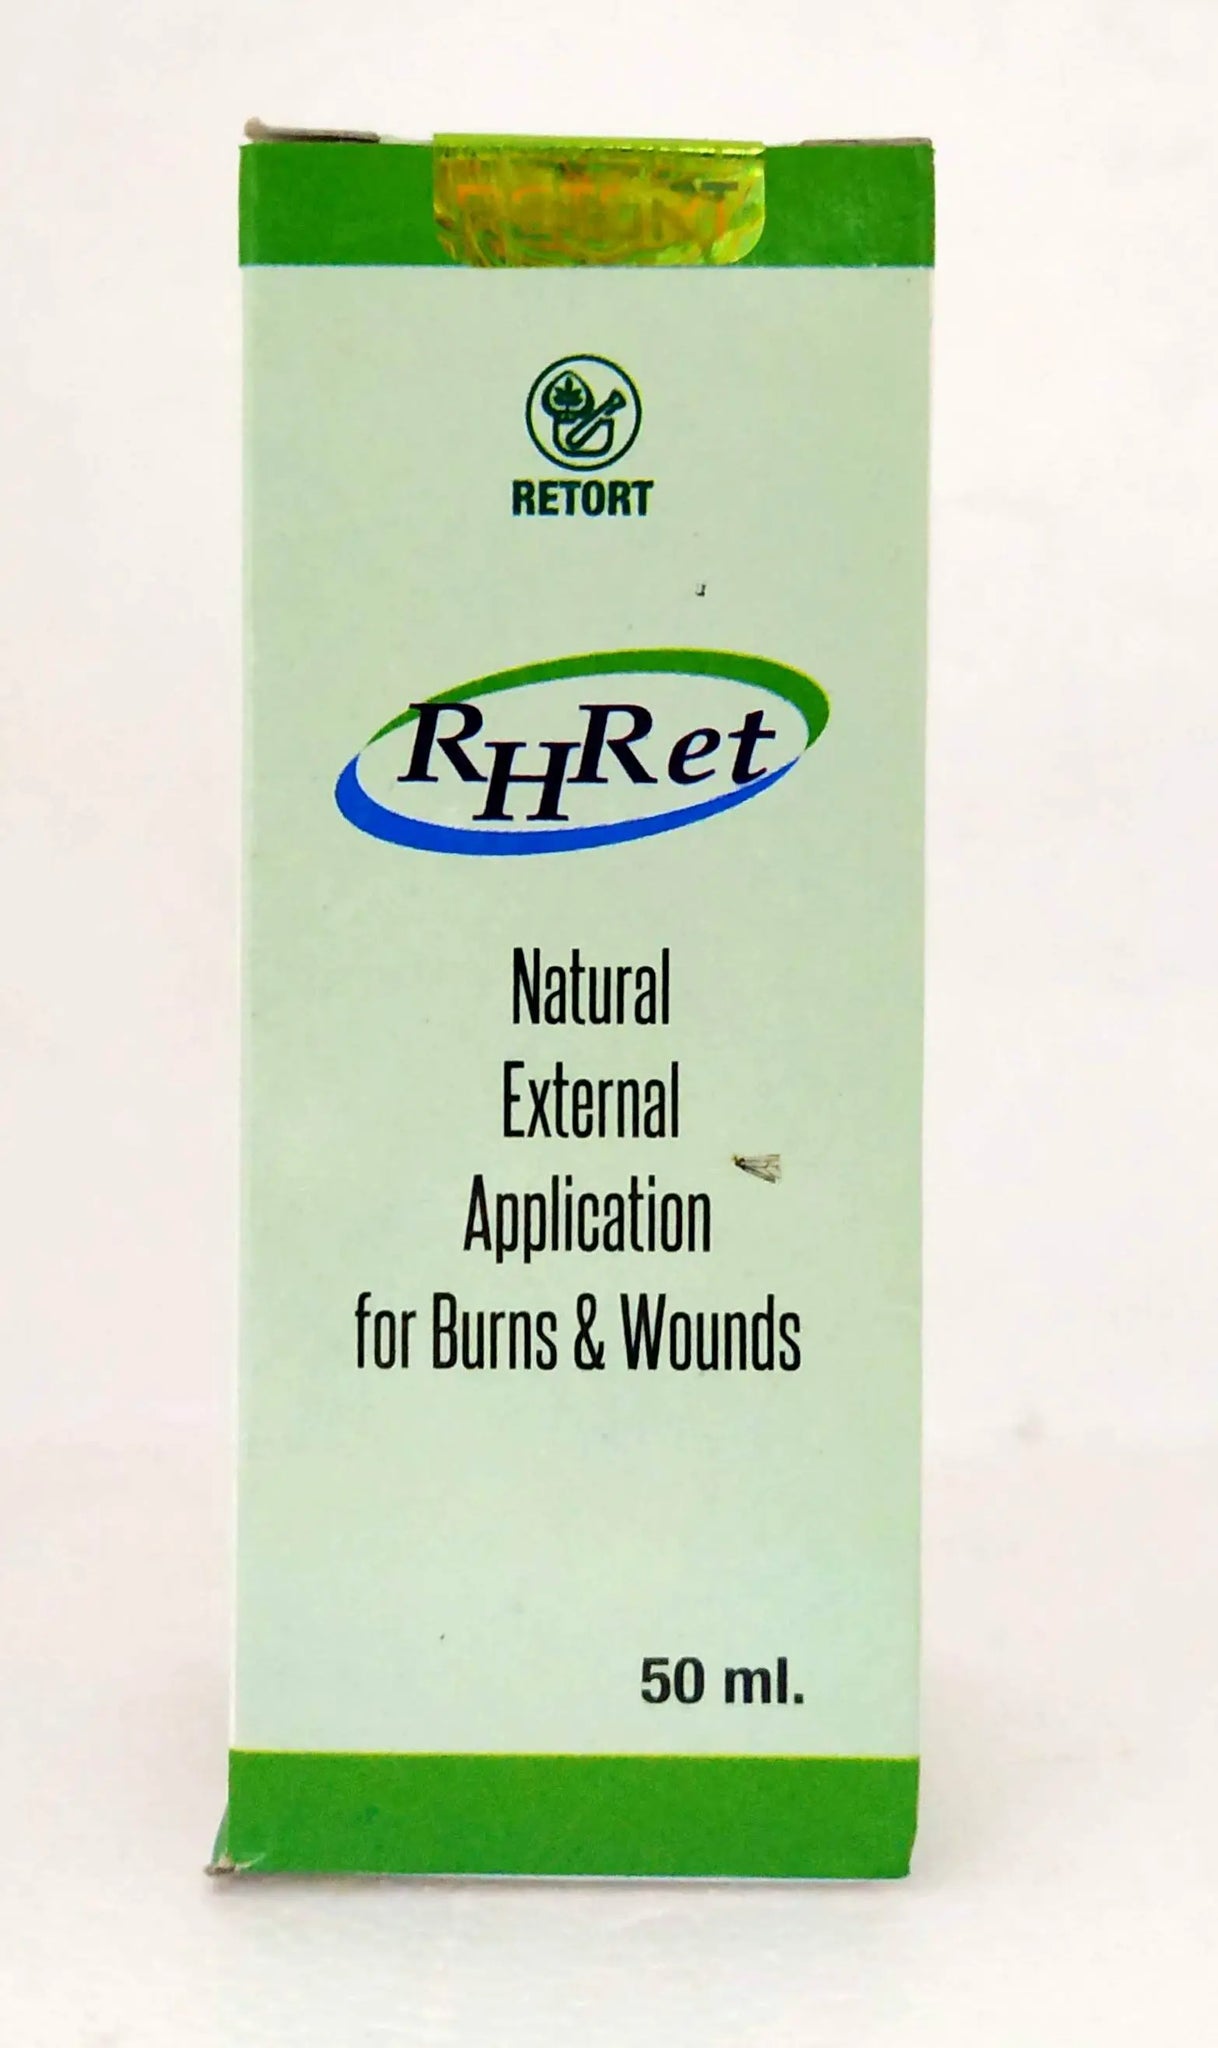 RHret Oil 50ml Retort Pharma